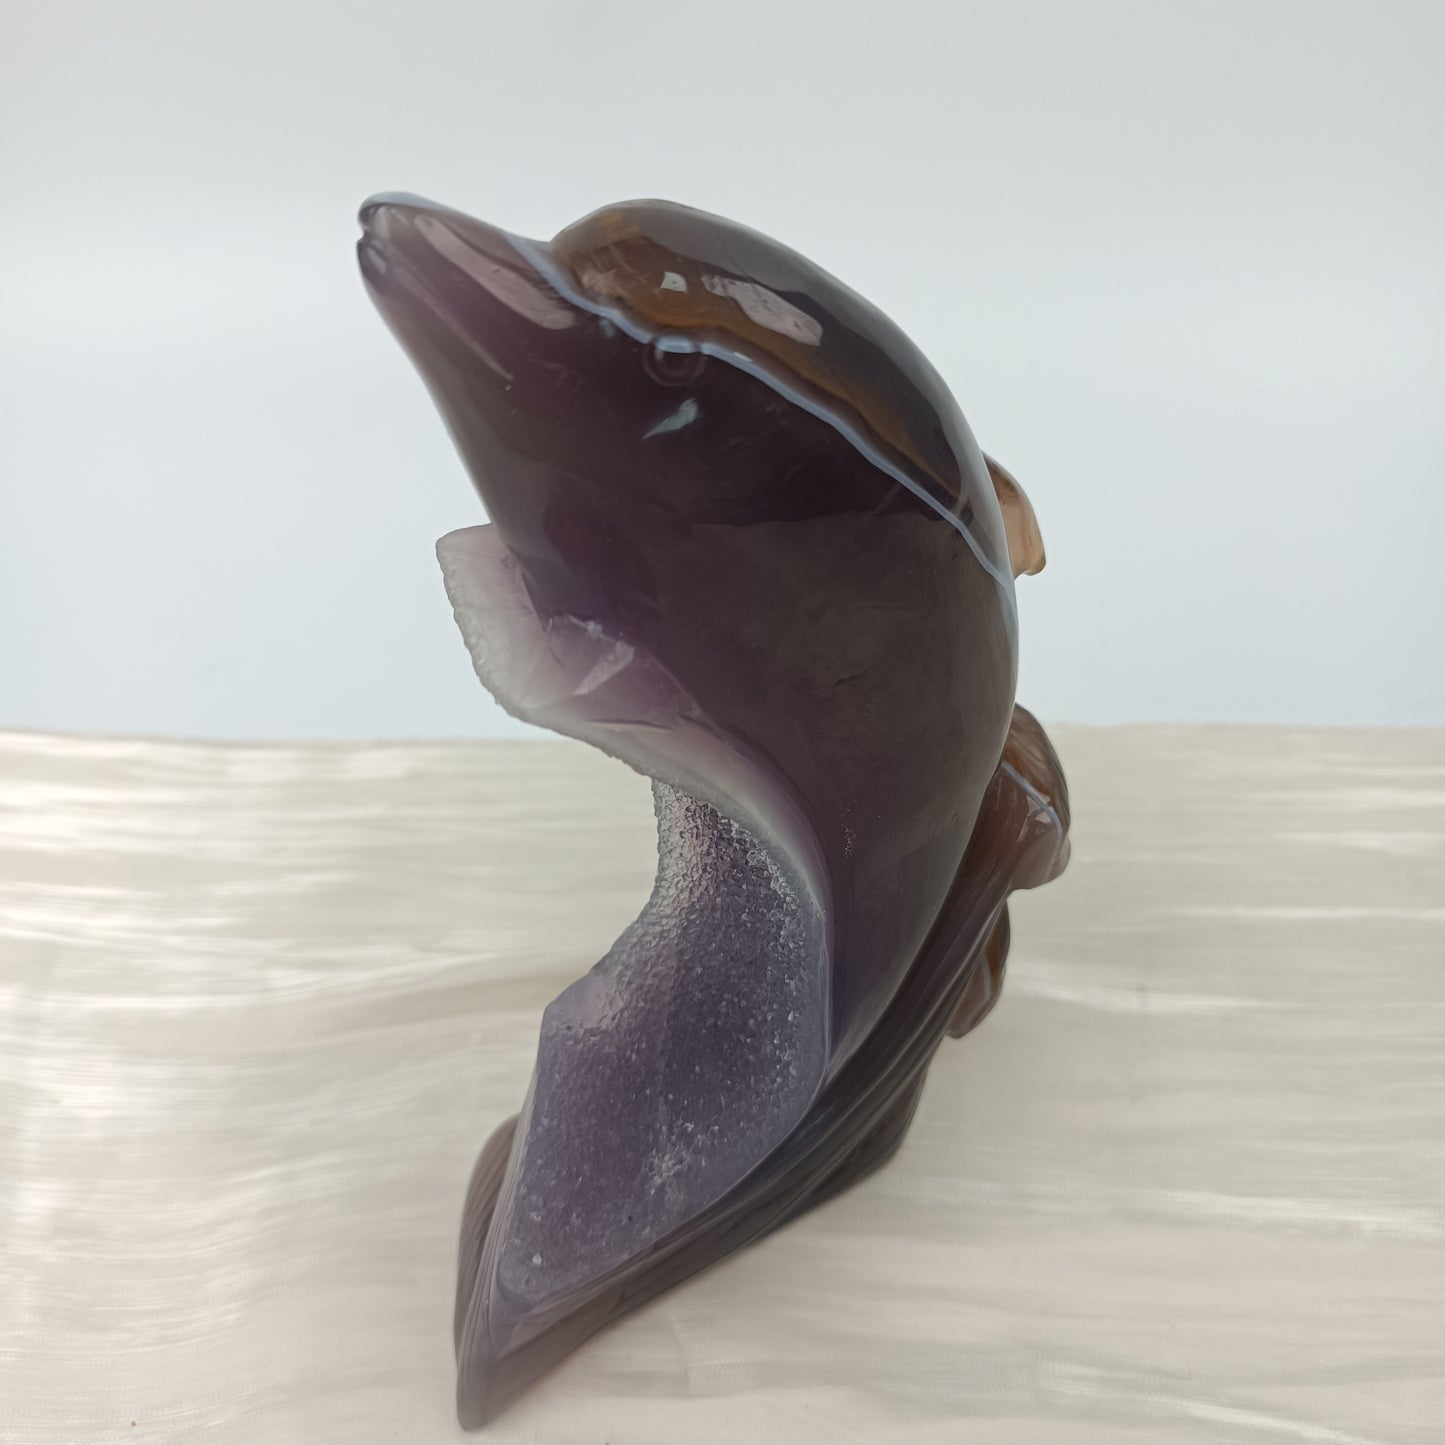 Agate dolphin with druzy body